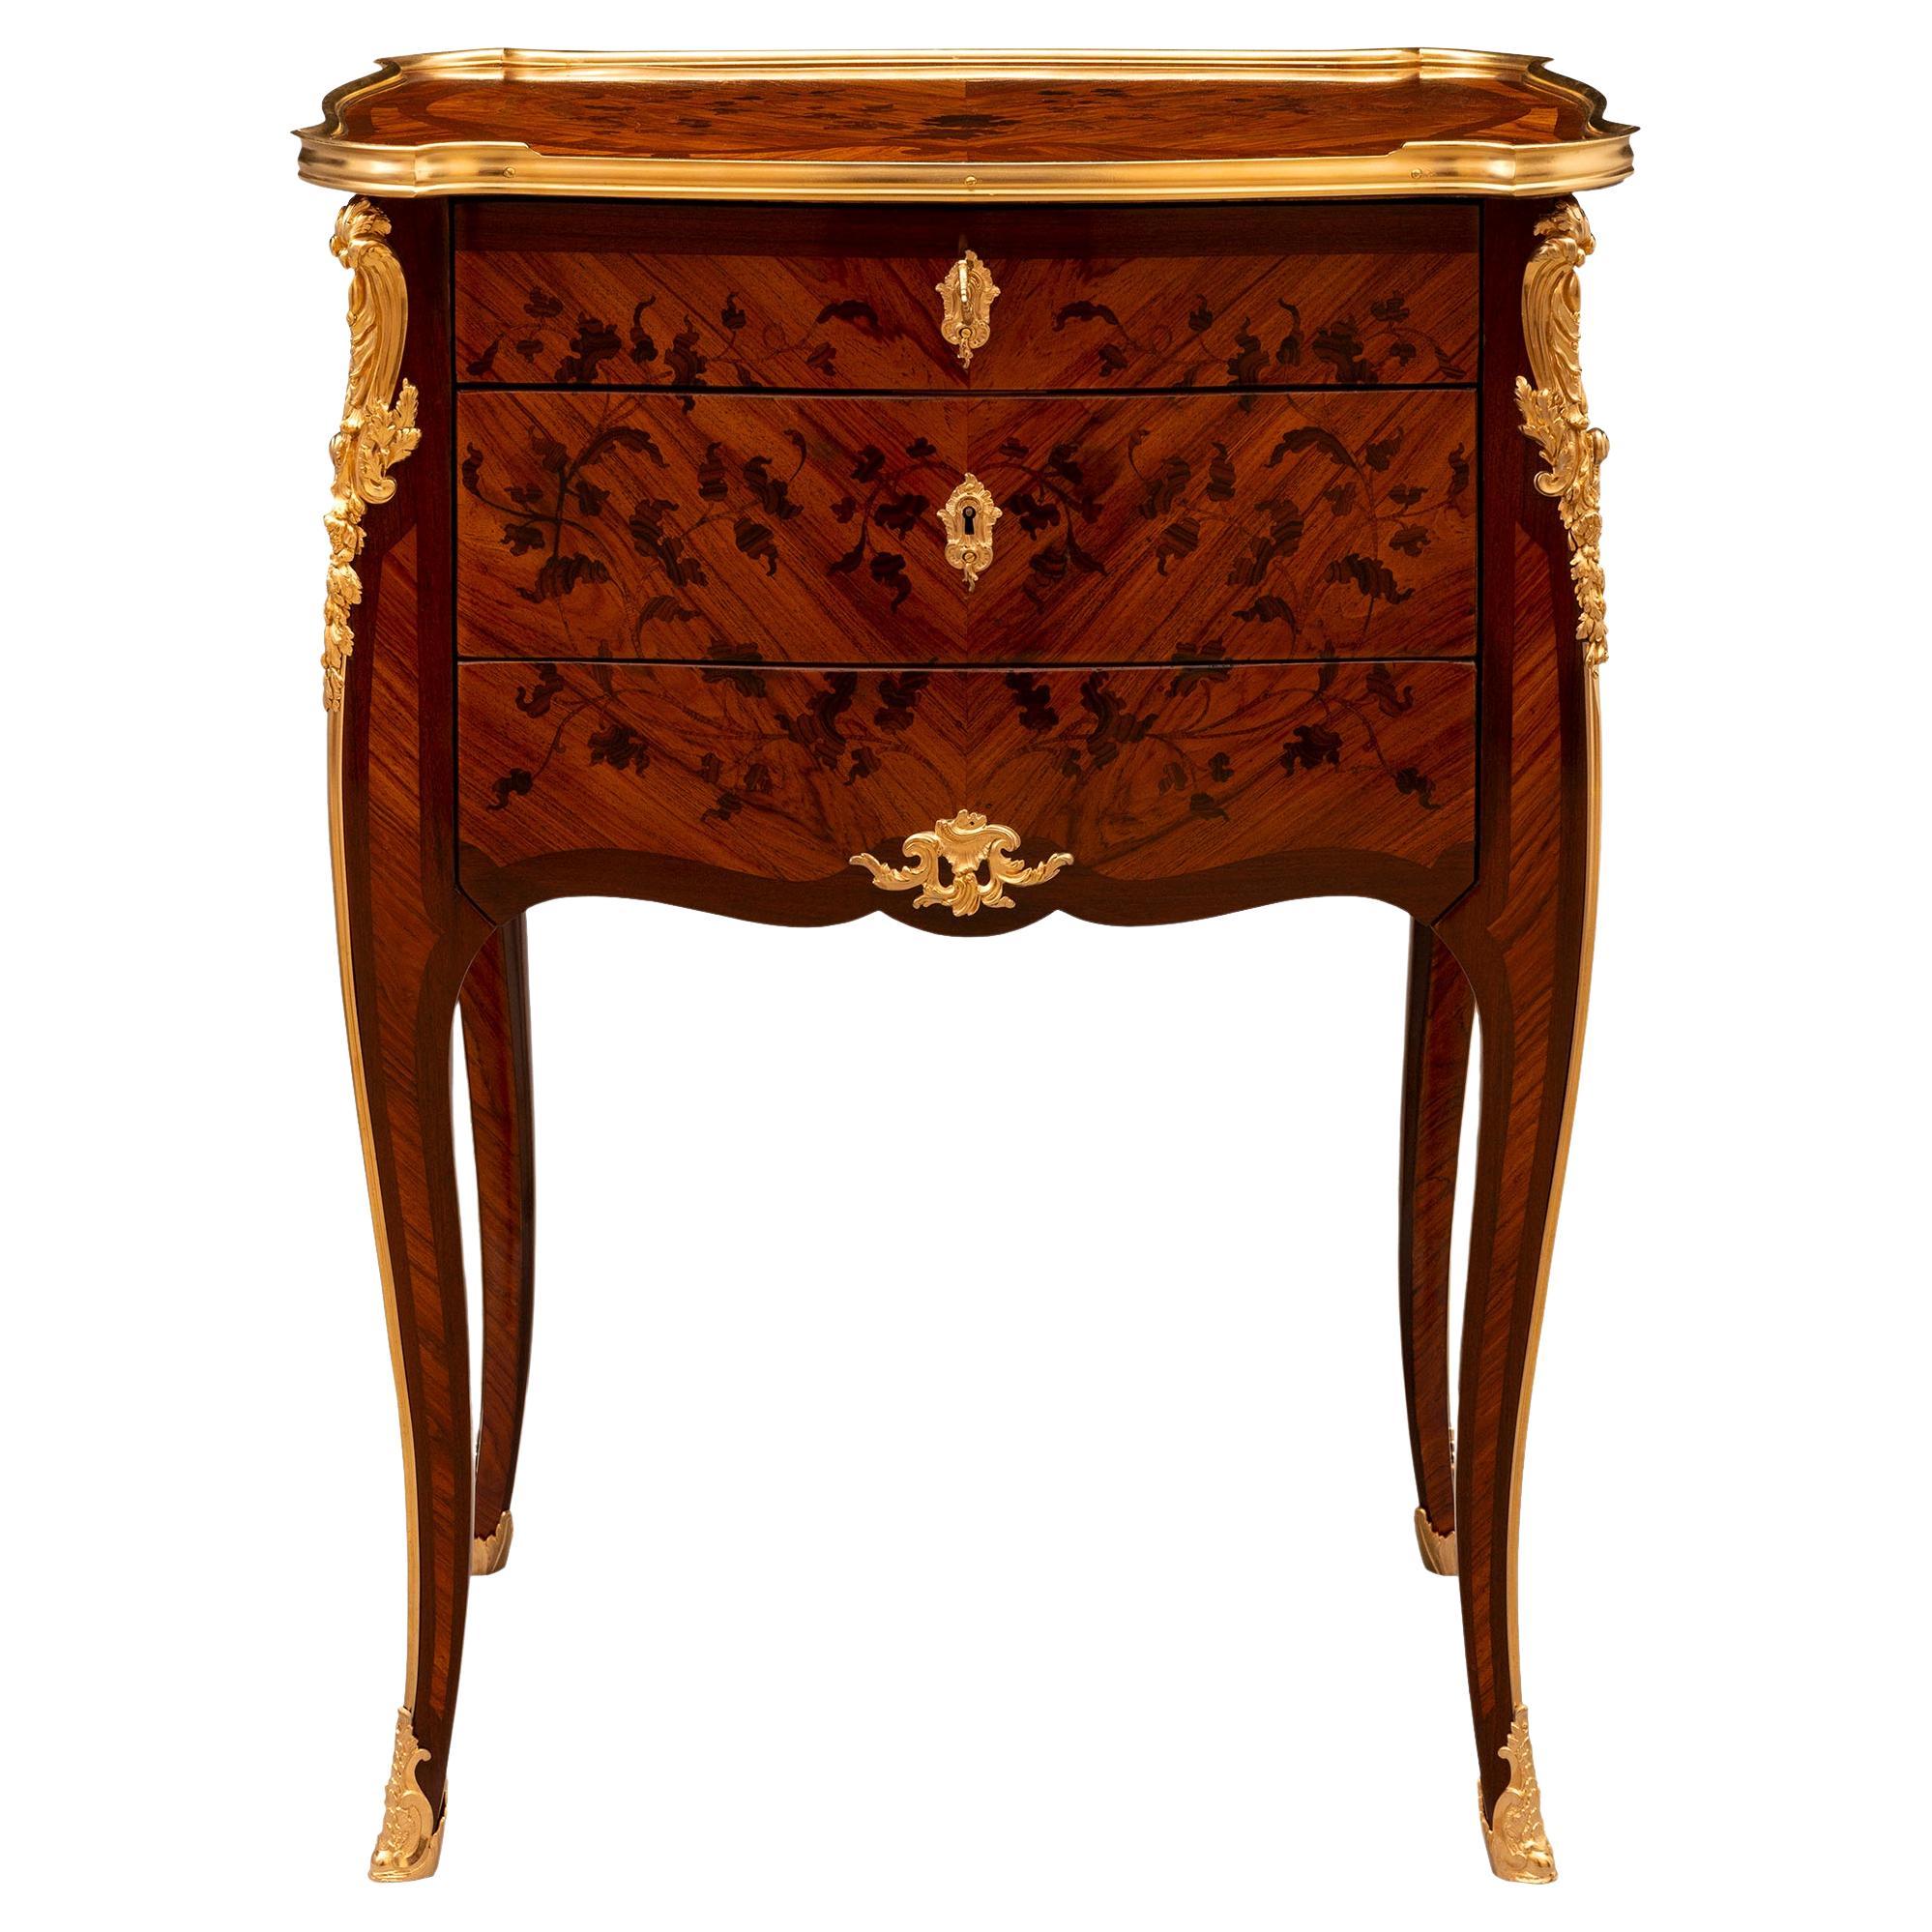 Table d'appoint Louis XV du XIXe siècle en bois de roi, bois exotique et bronze doré